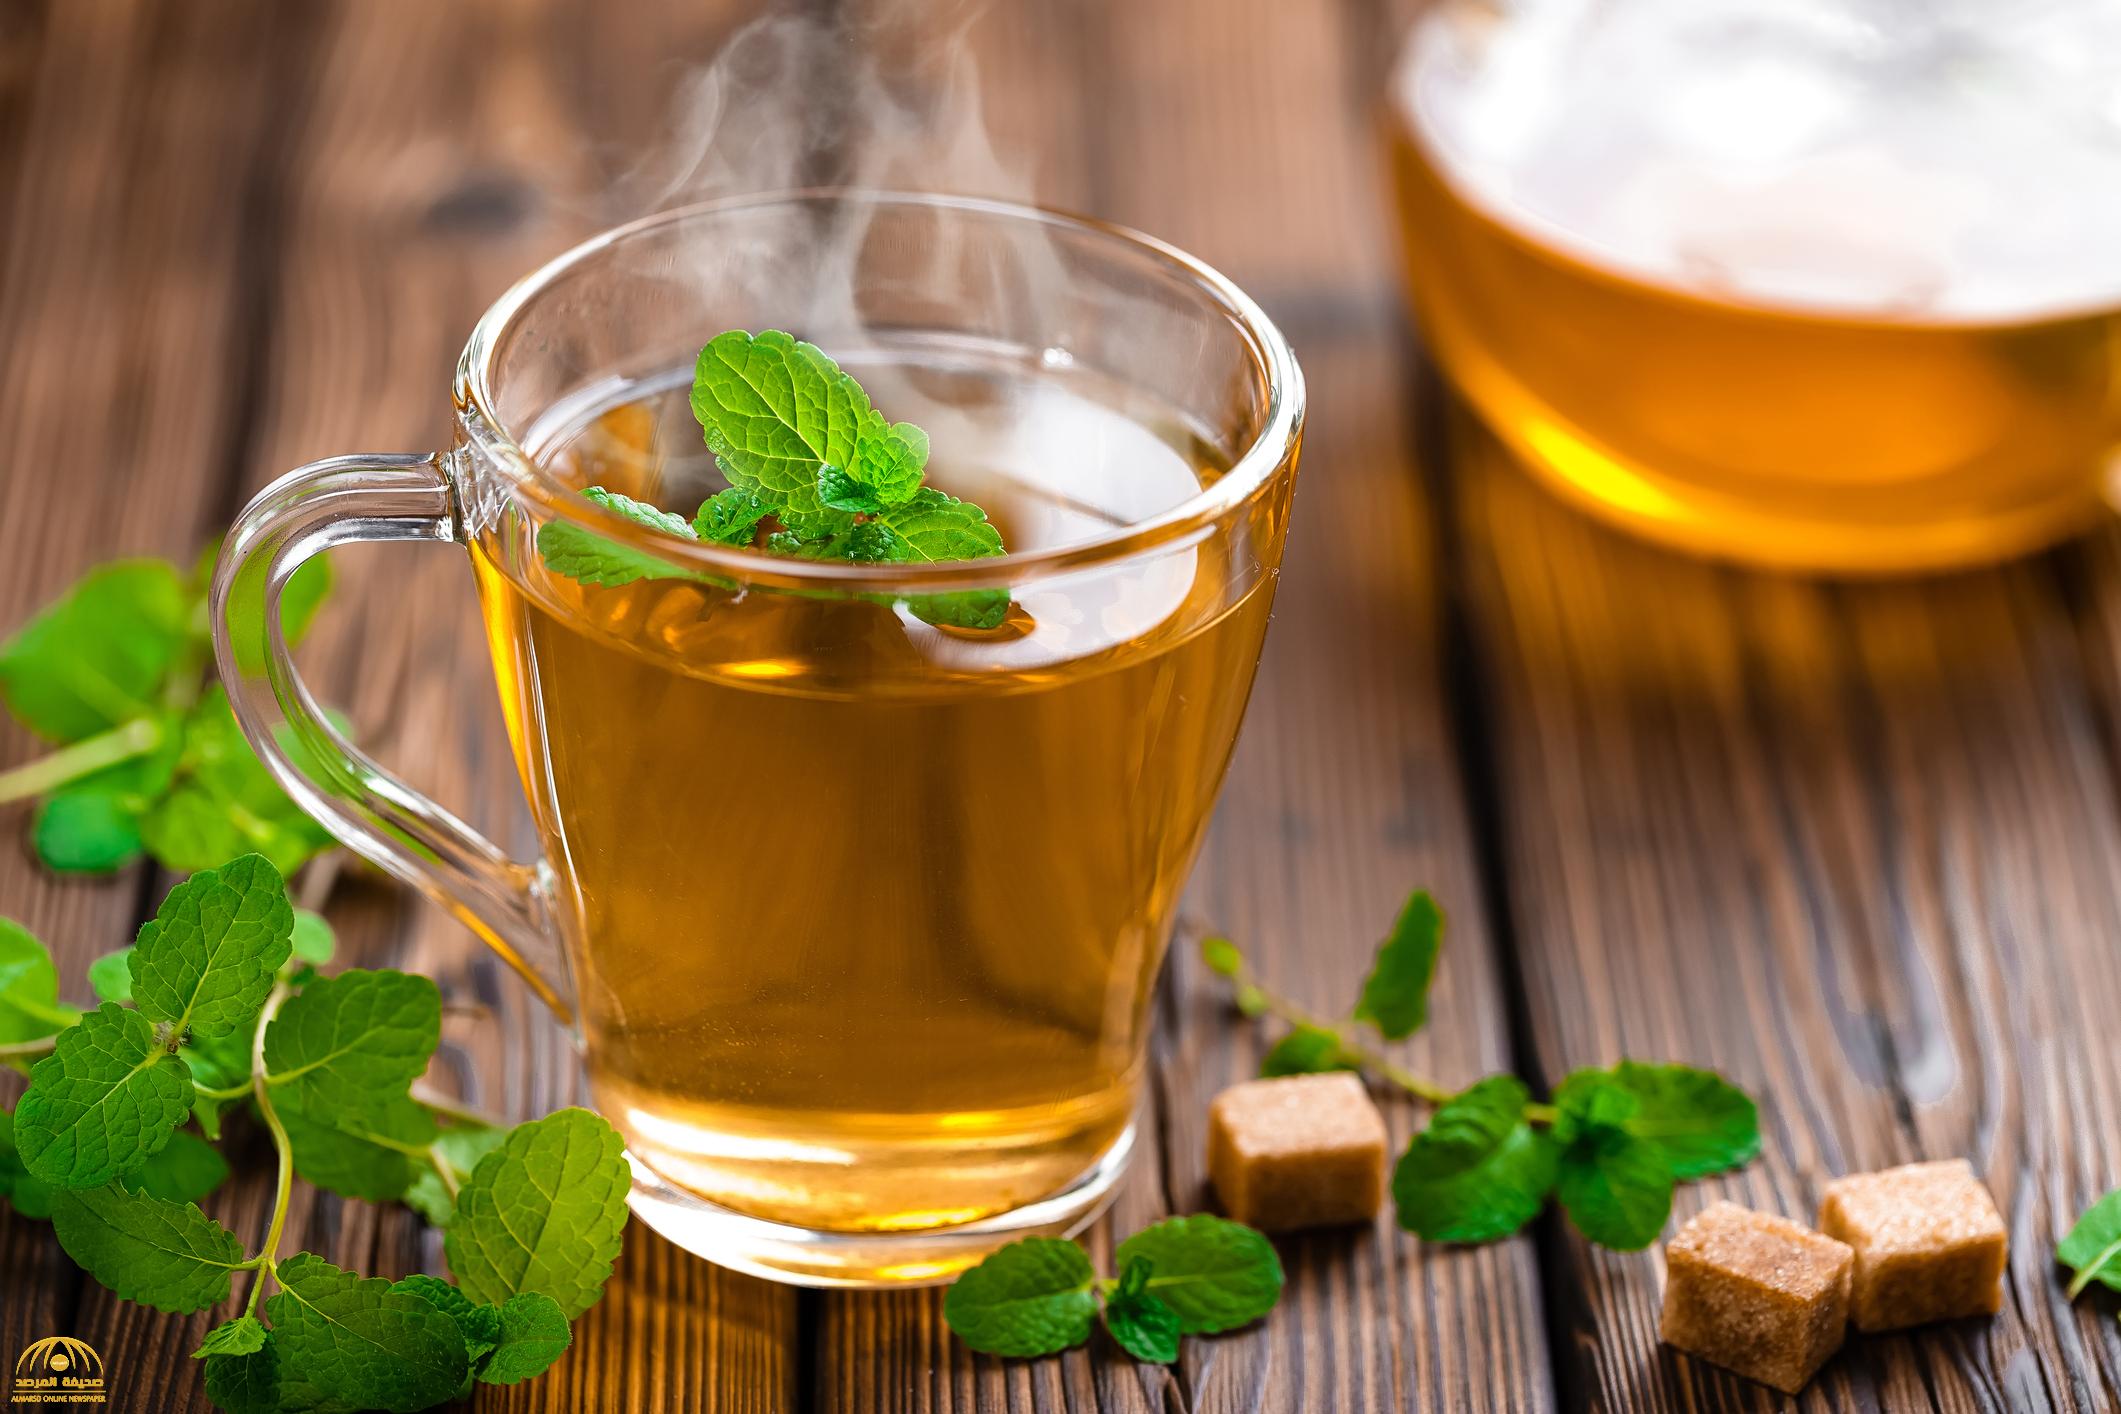 فوائد مذهلة للشاي الأخضر من بينها علاج مشكلة تقلق النساء والرجال!